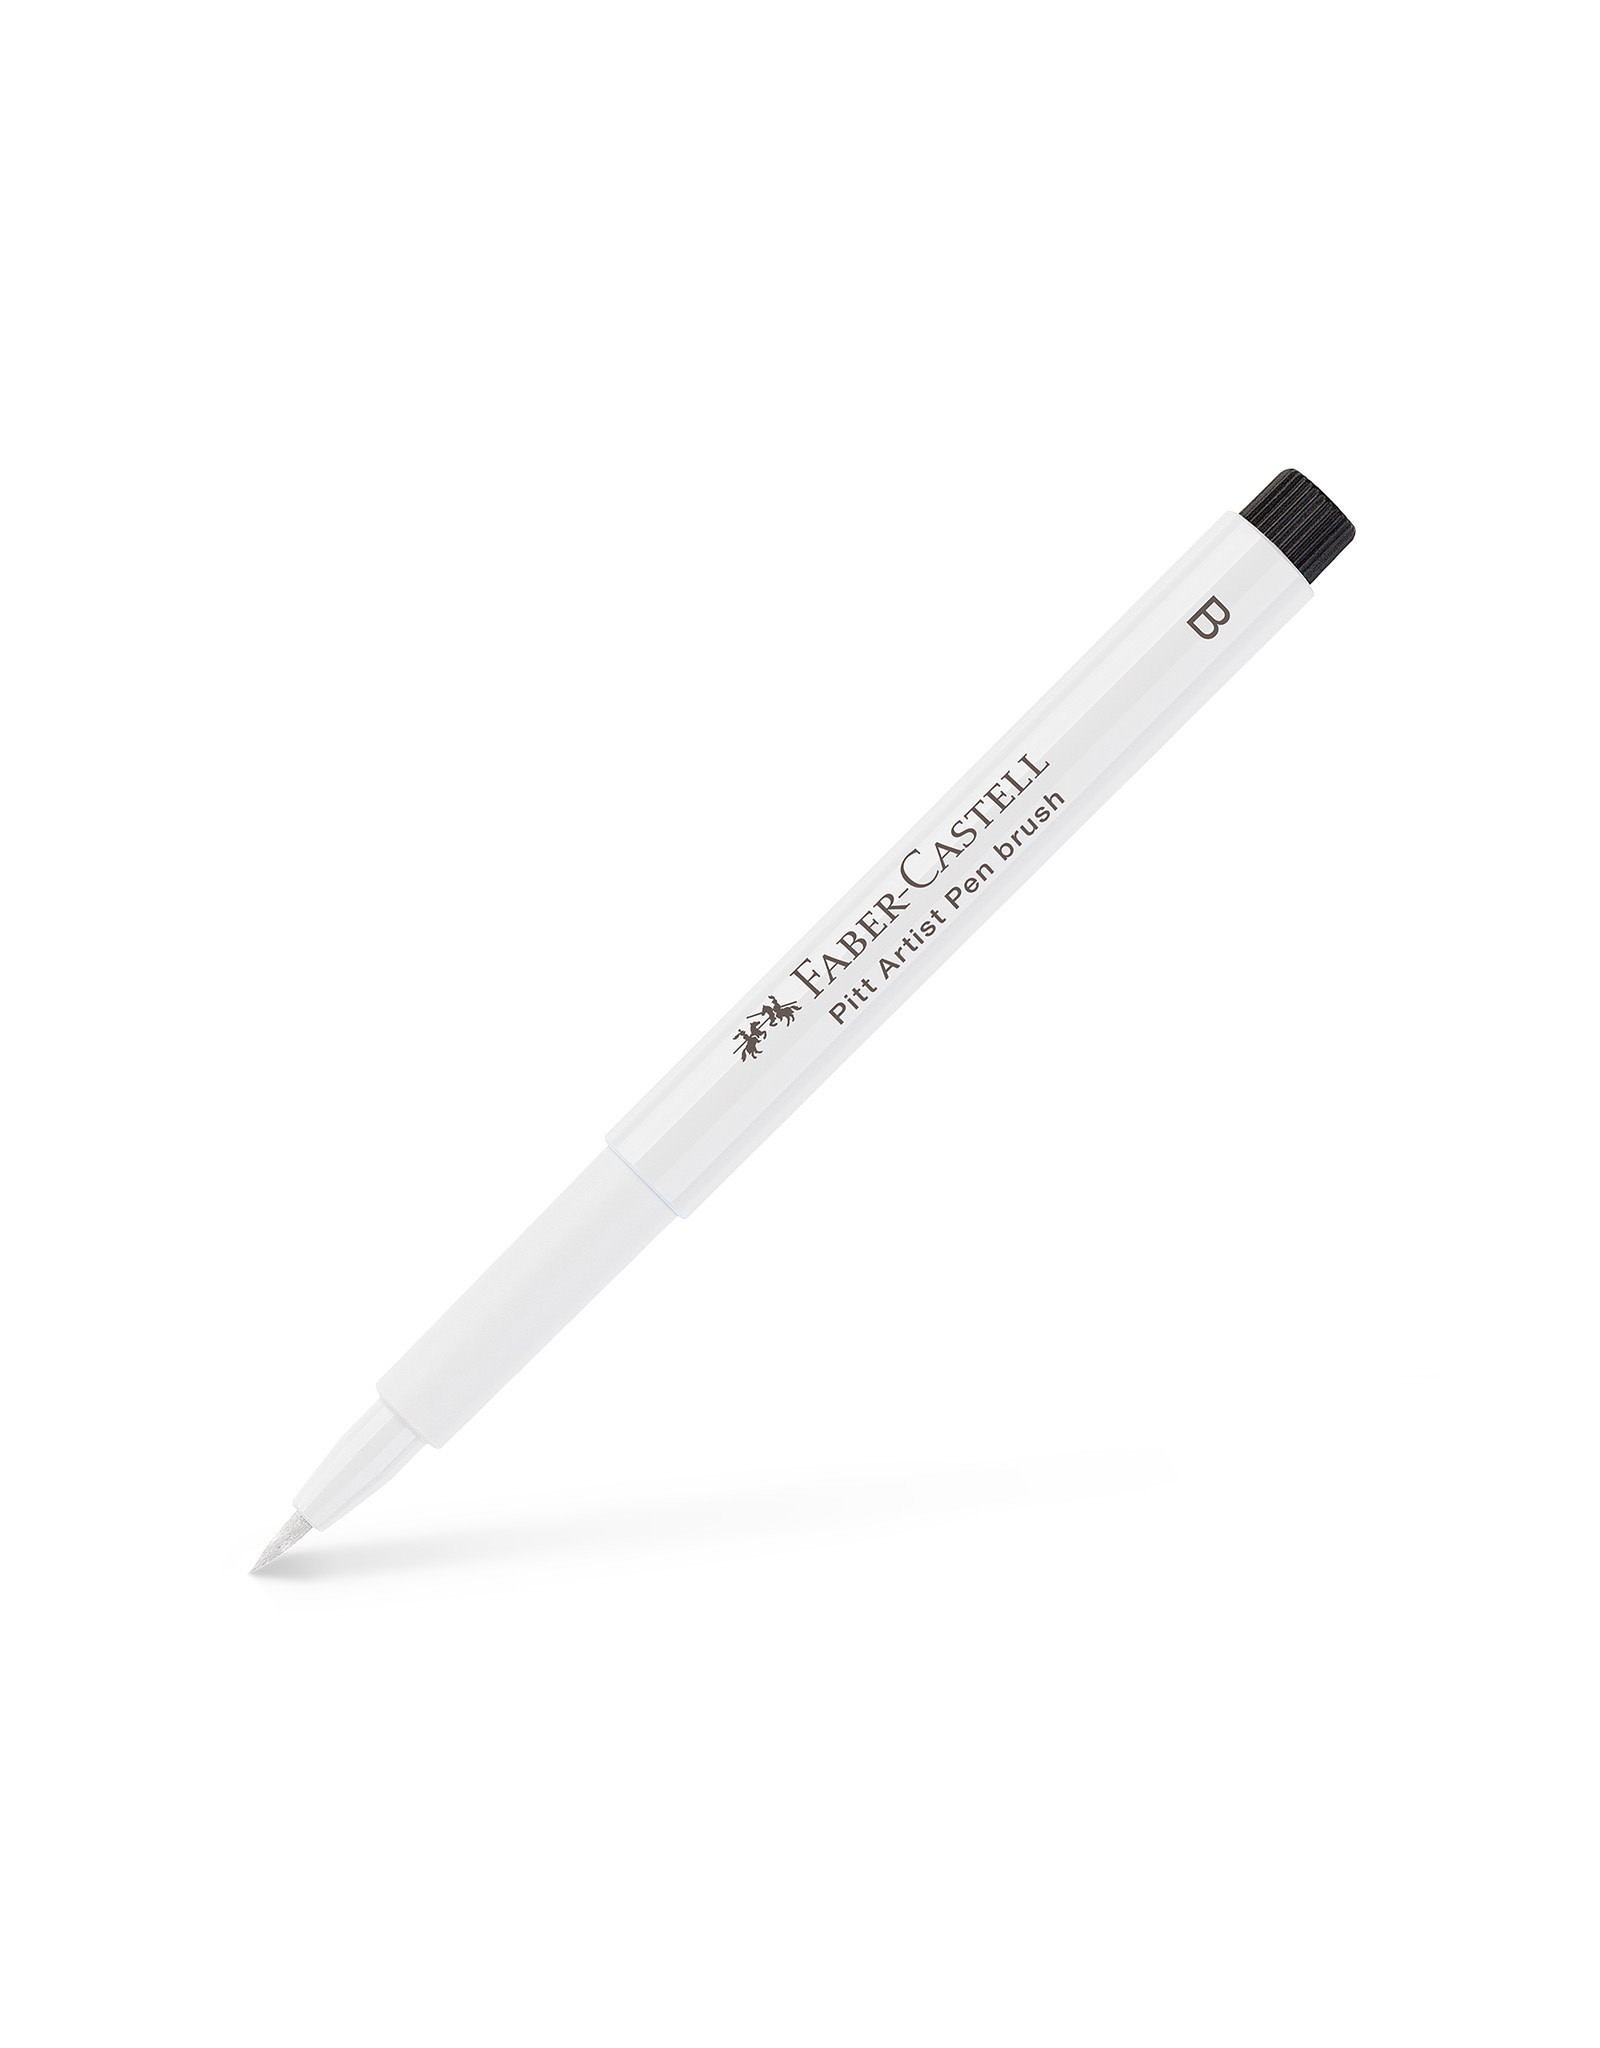 FABER-CASTELL Pitt Artist Pen, Brush, White